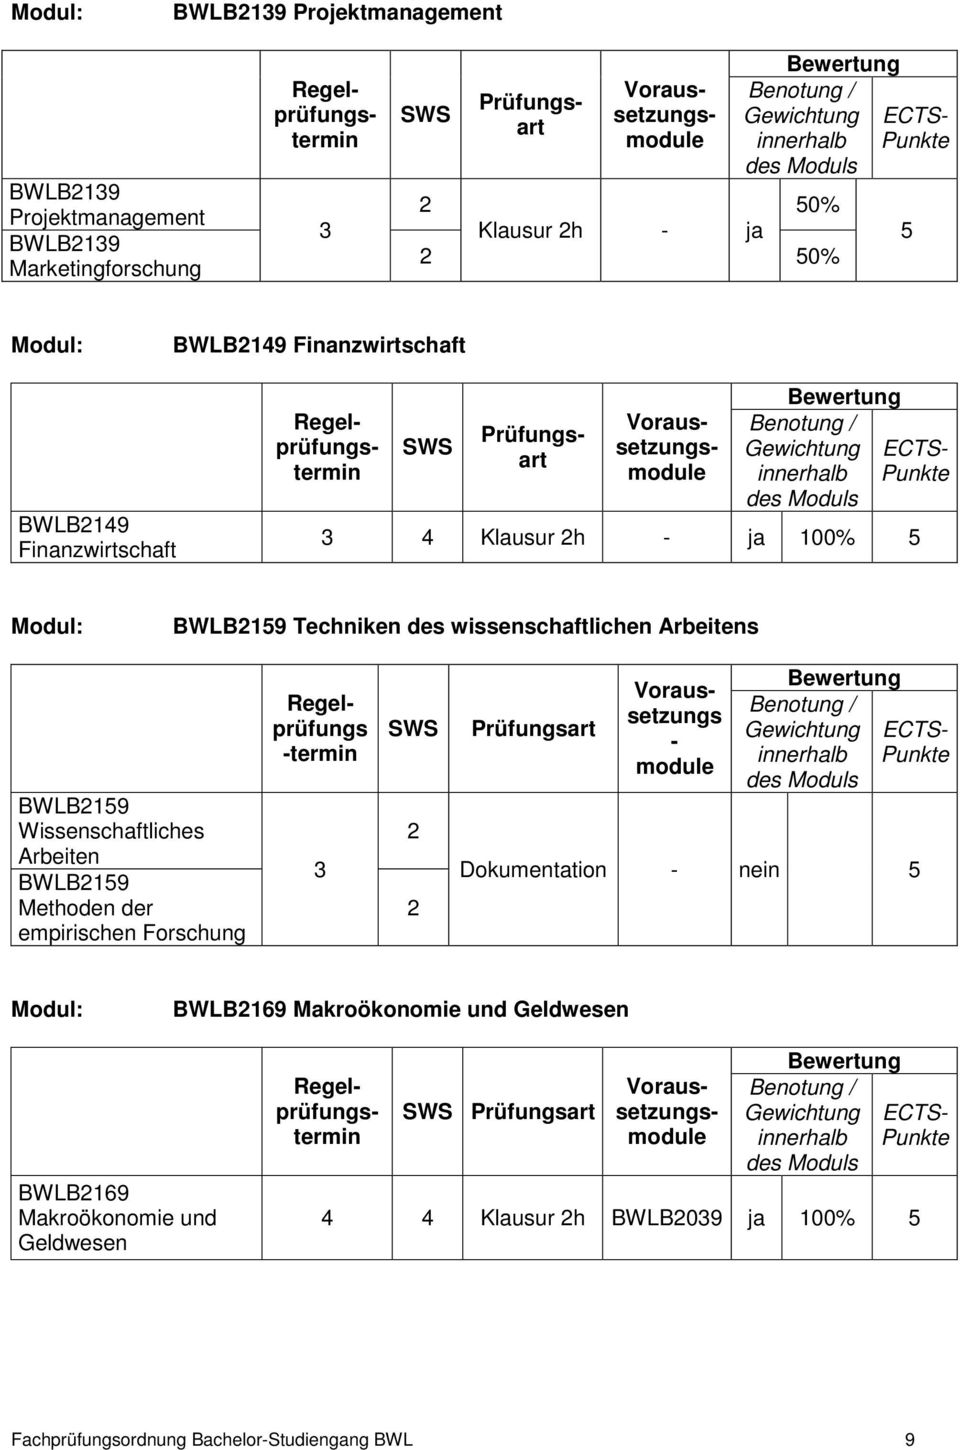 BWLB19 Methoden der empirischen Forschung Regelprüfungs -termin 3 Voraussetzungs - module Dokumentation - nein BWLB169